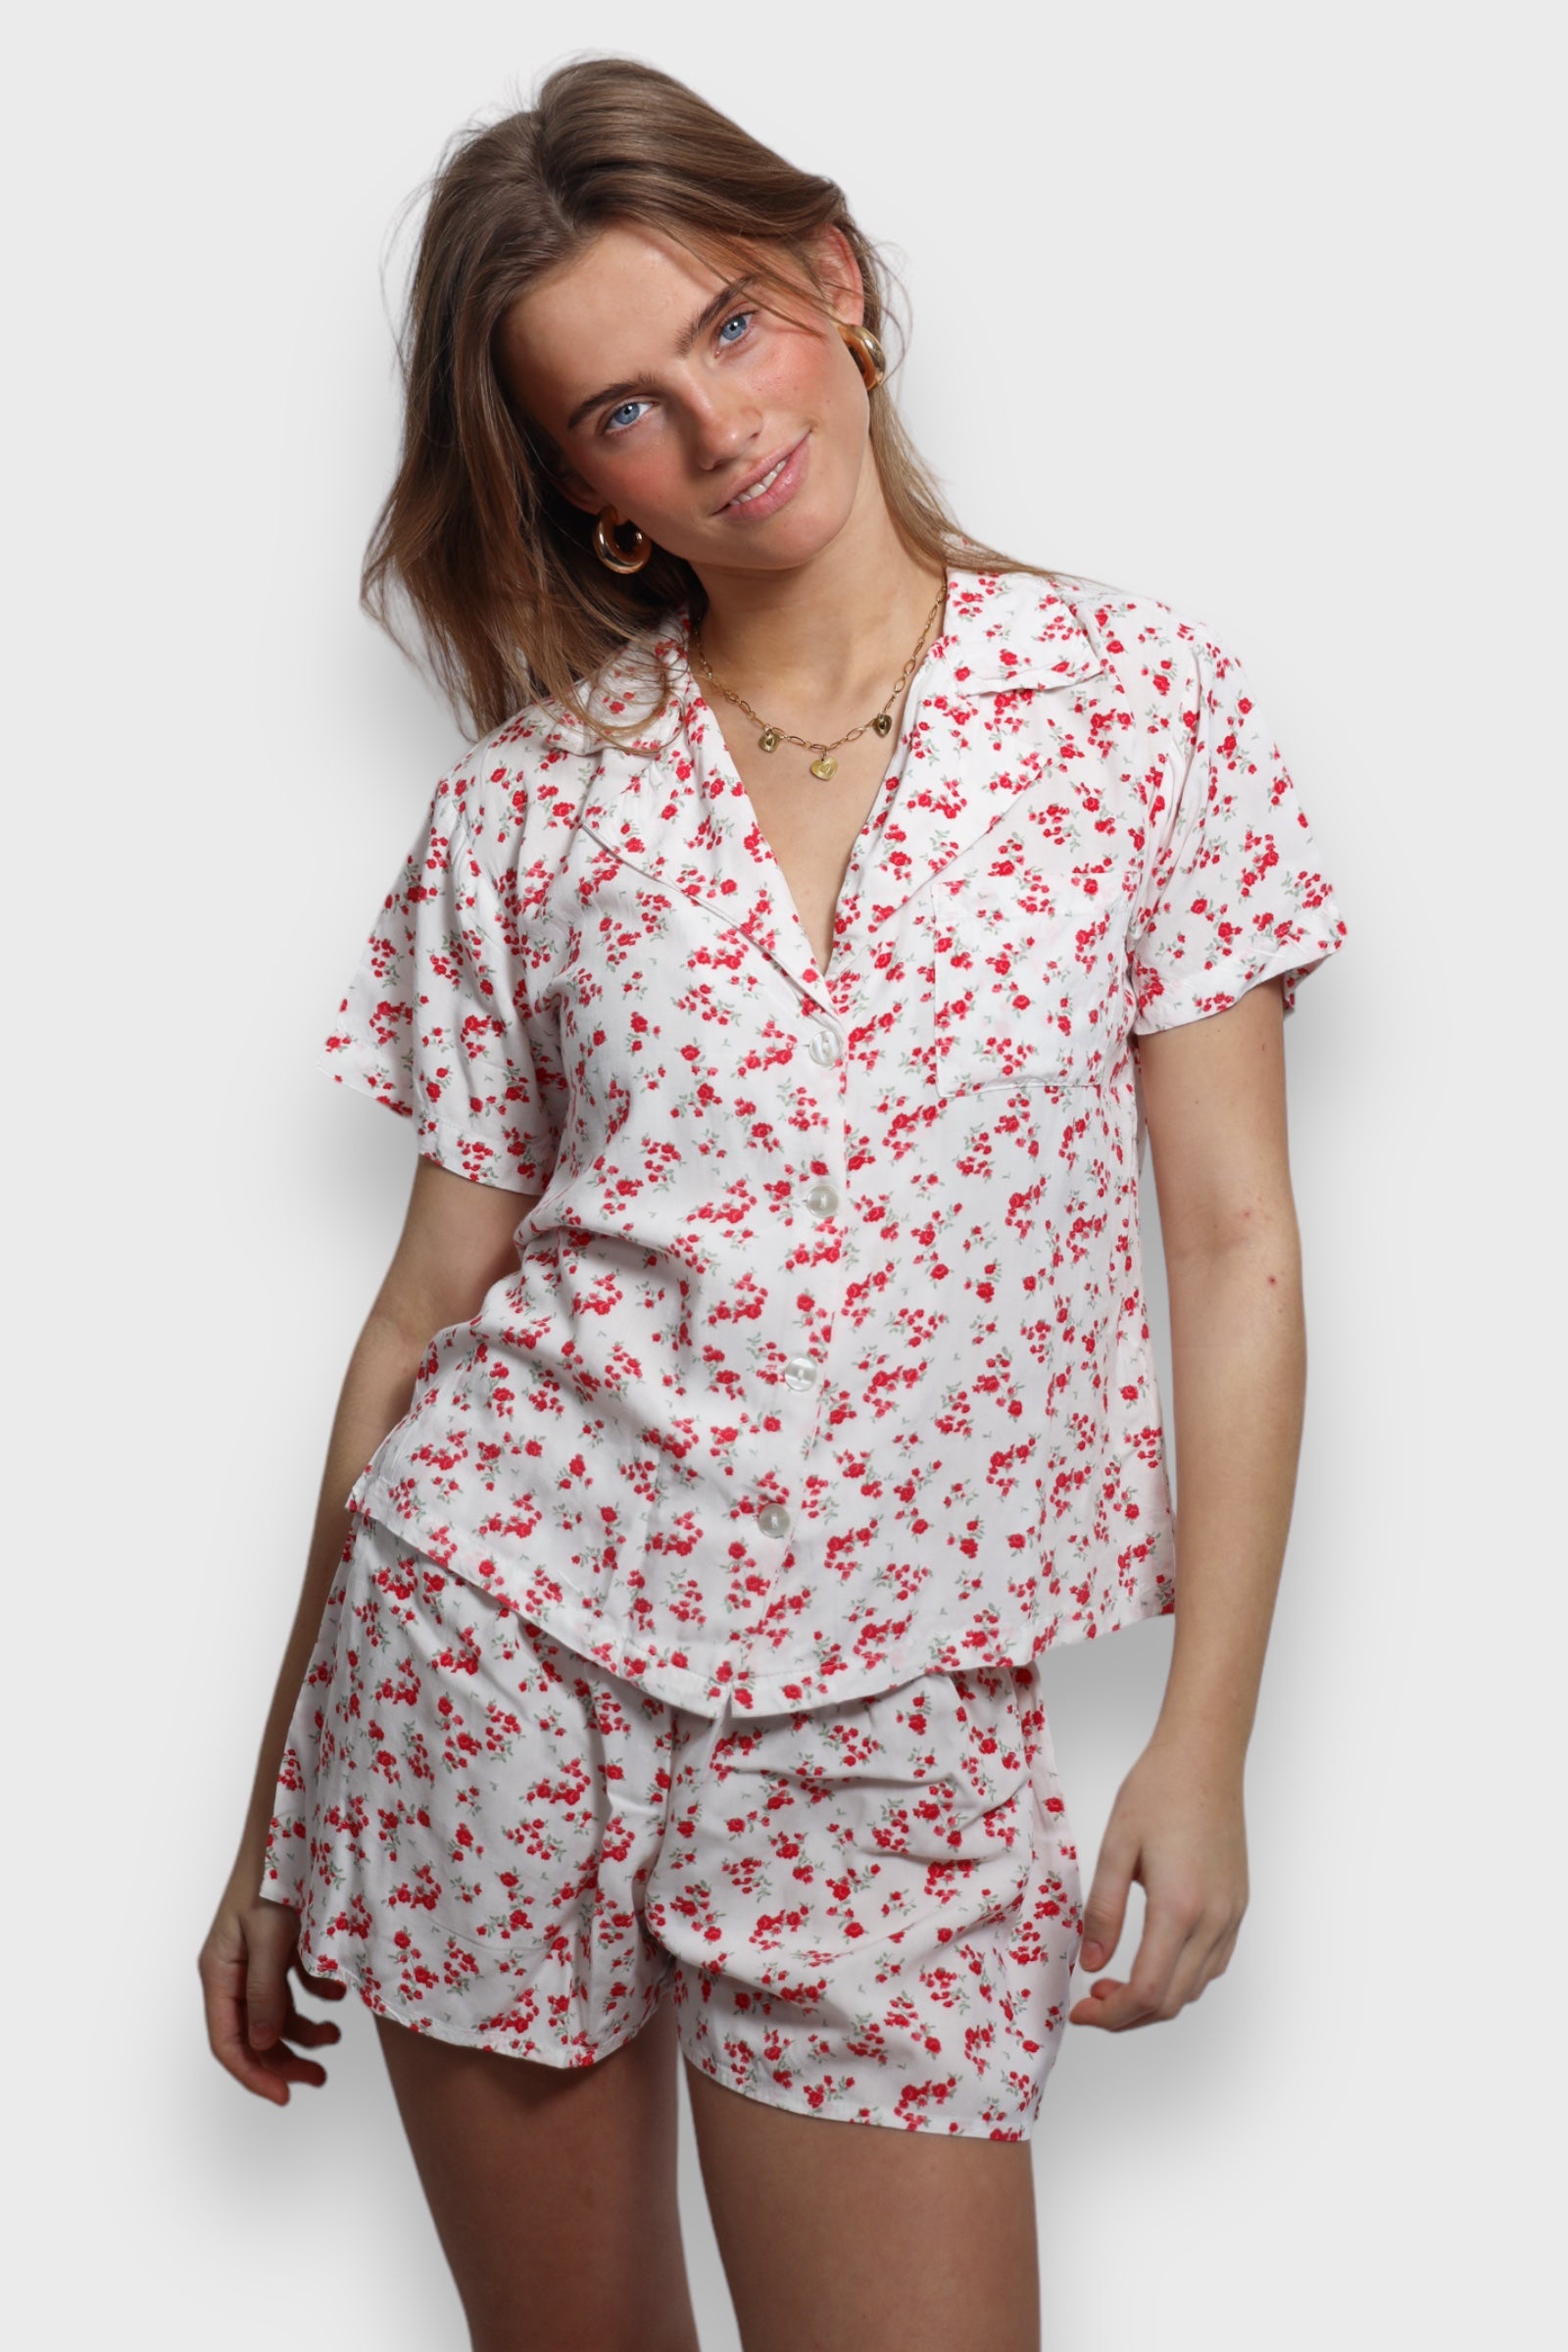 "Rosy" pajamas